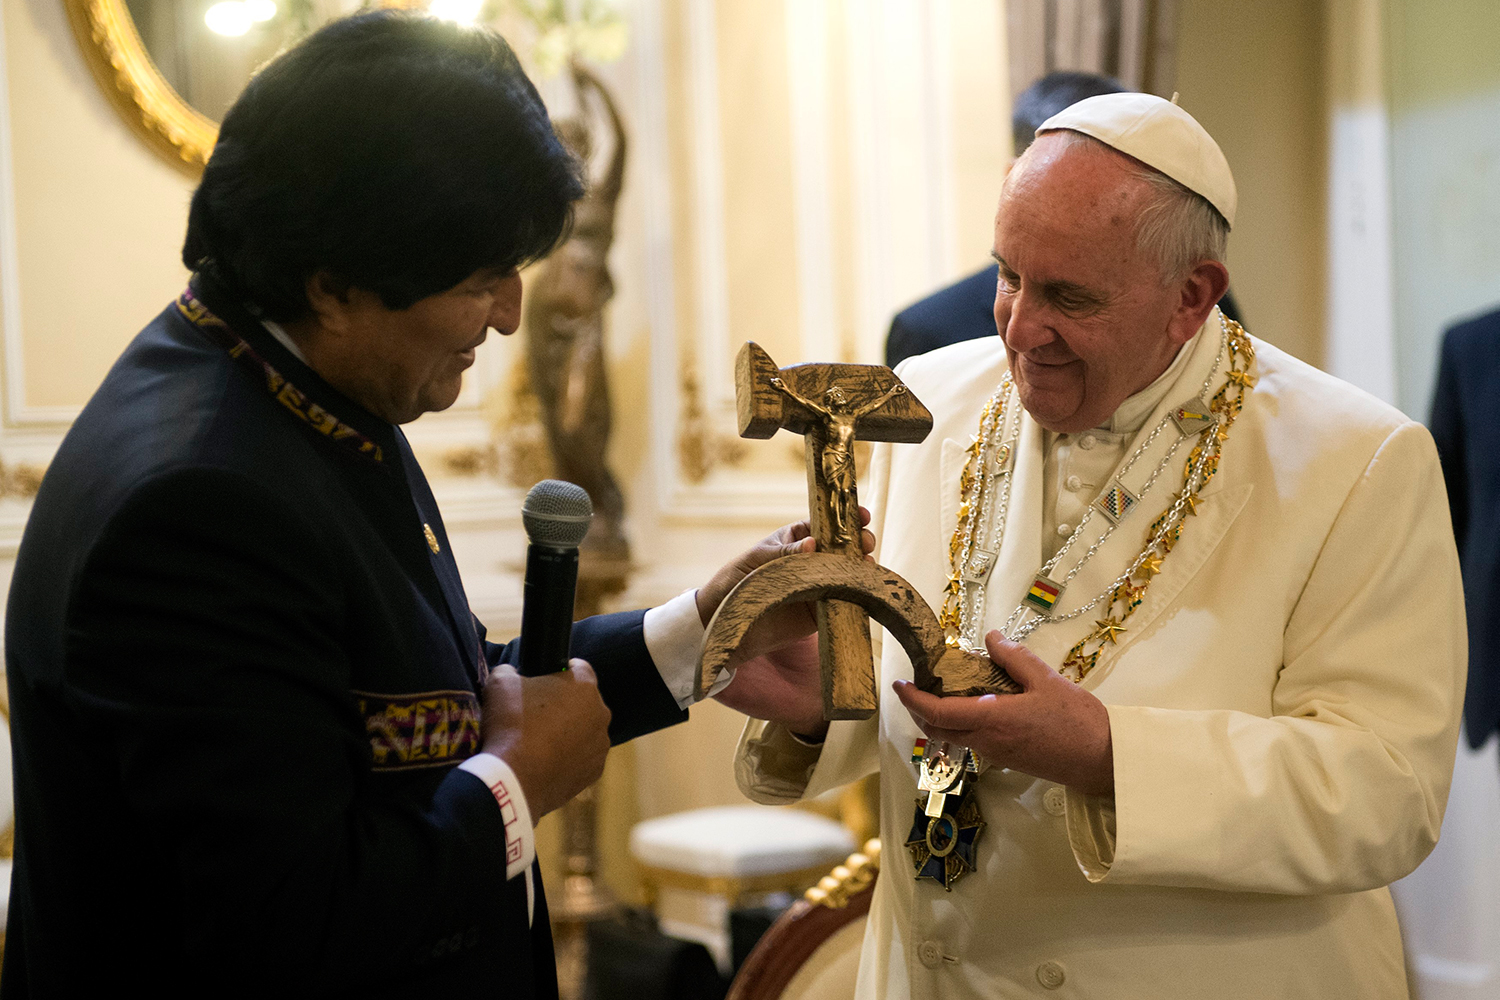 El Papa a Evo Morales al recibir el polémico obsequio: "No está bien eso"